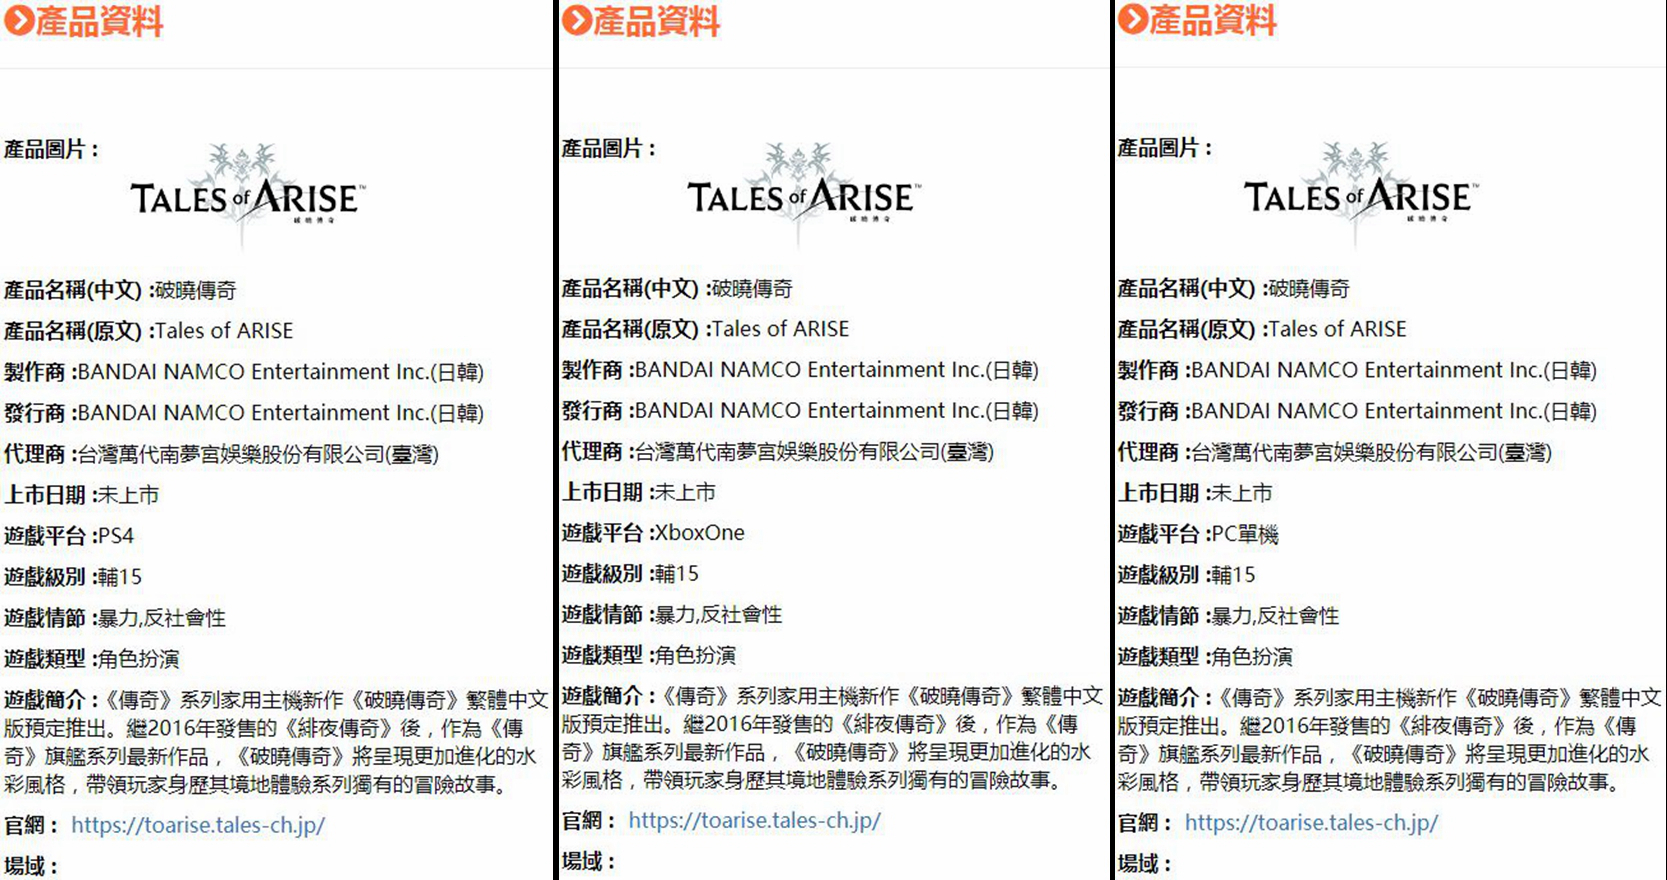 《破晓传说》在台湾通过评级 繁体中文版确认推出